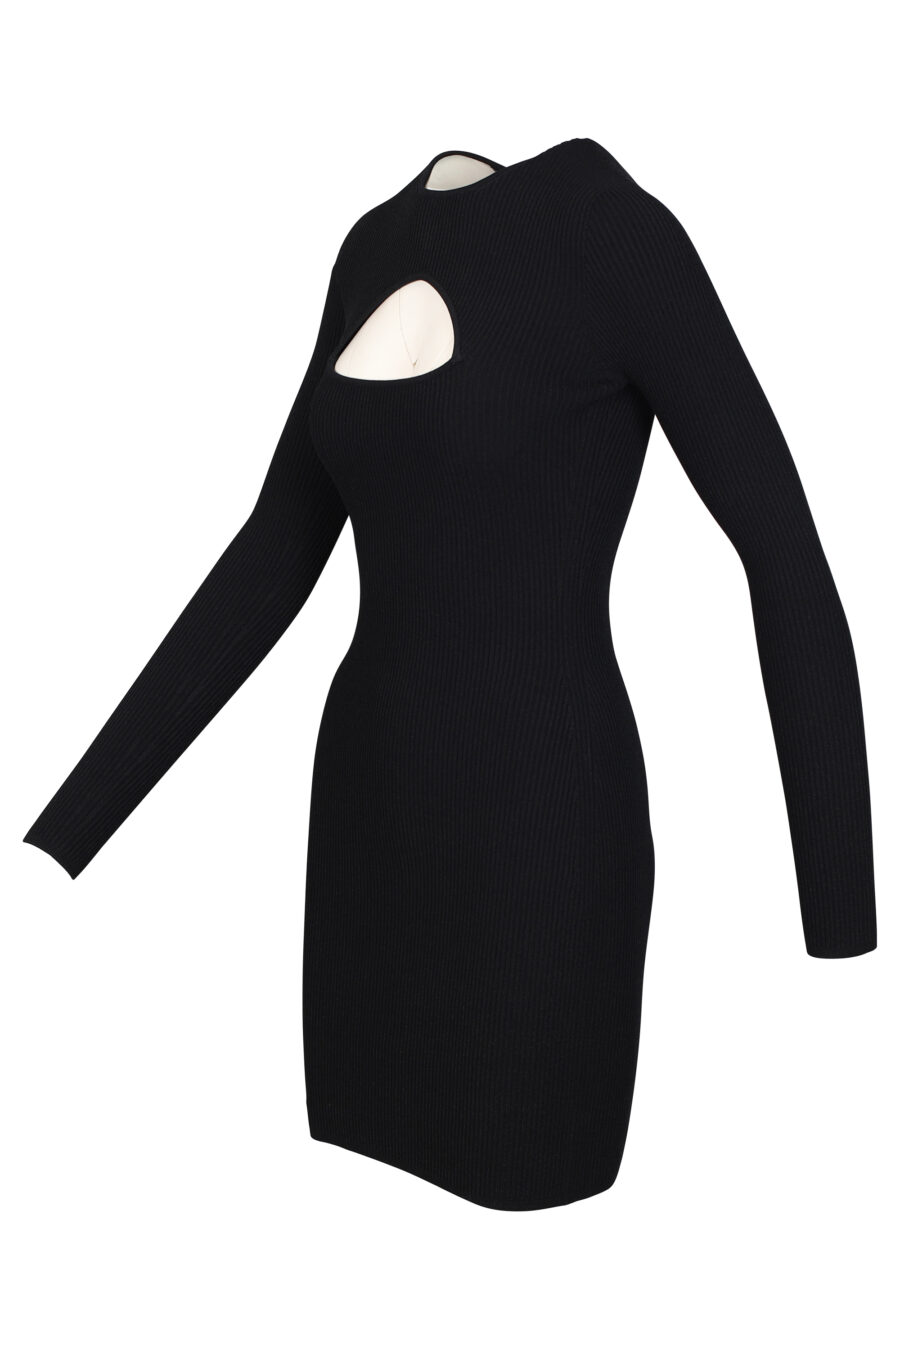 Kurzes schwarzes "Cut-Out" Kleid mit langen Ärmeln und Ausschnitt - 8054148010836 2